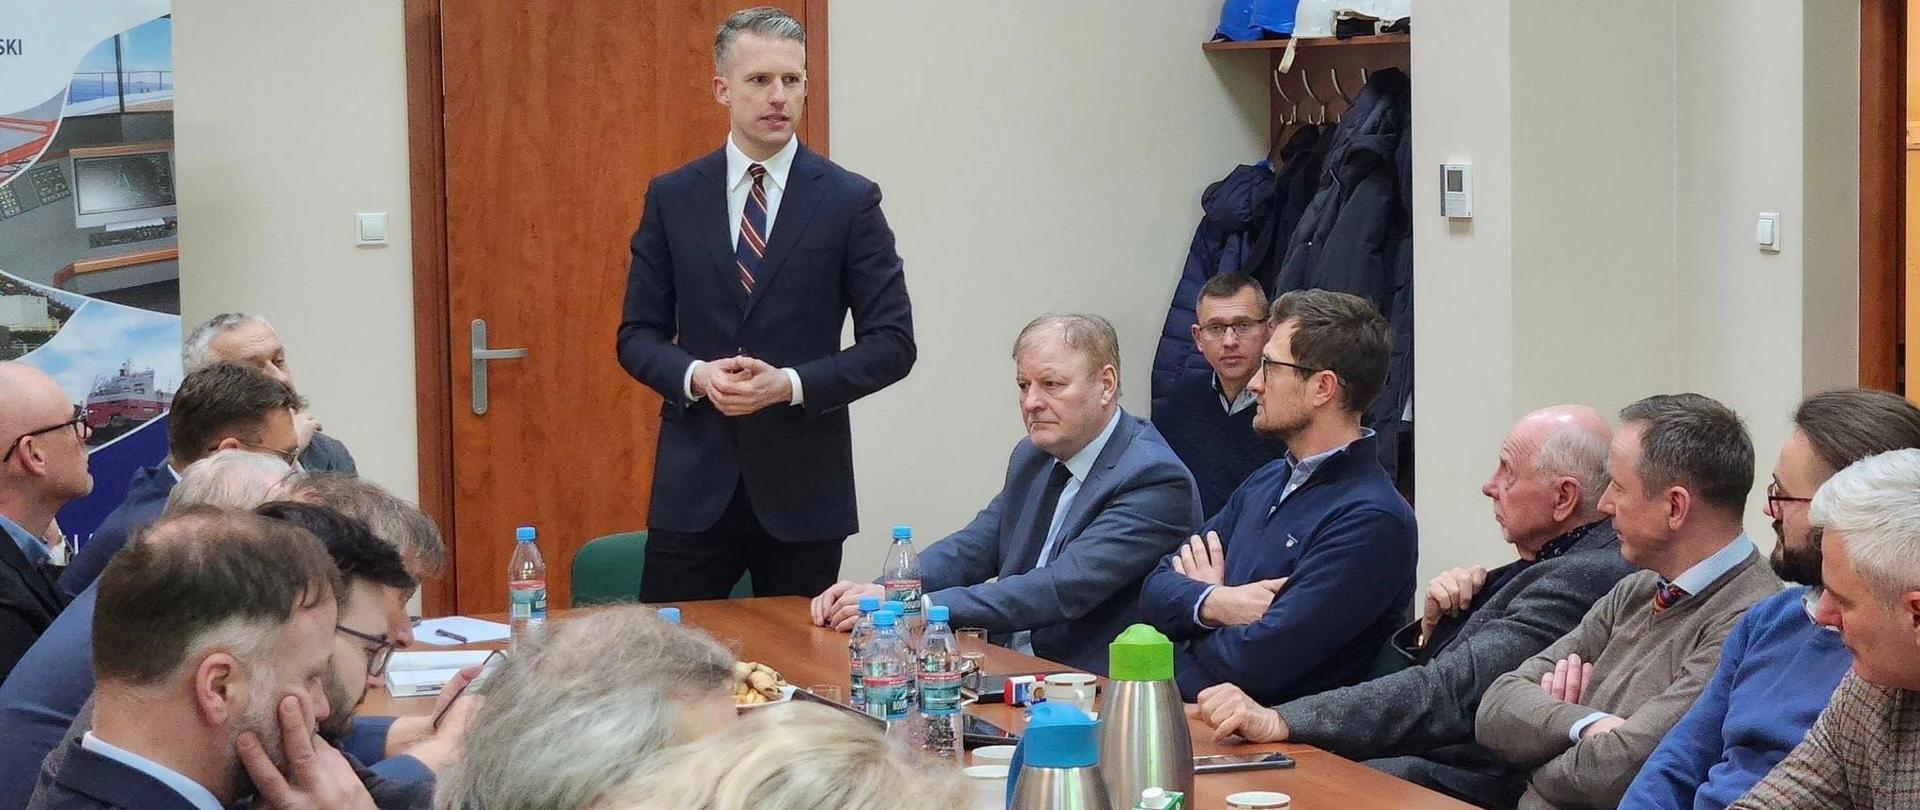 Wiceminister infrastruktury Arkadiusz Marchewka w trakcie spotkania z przedstawicielami branży morskiej